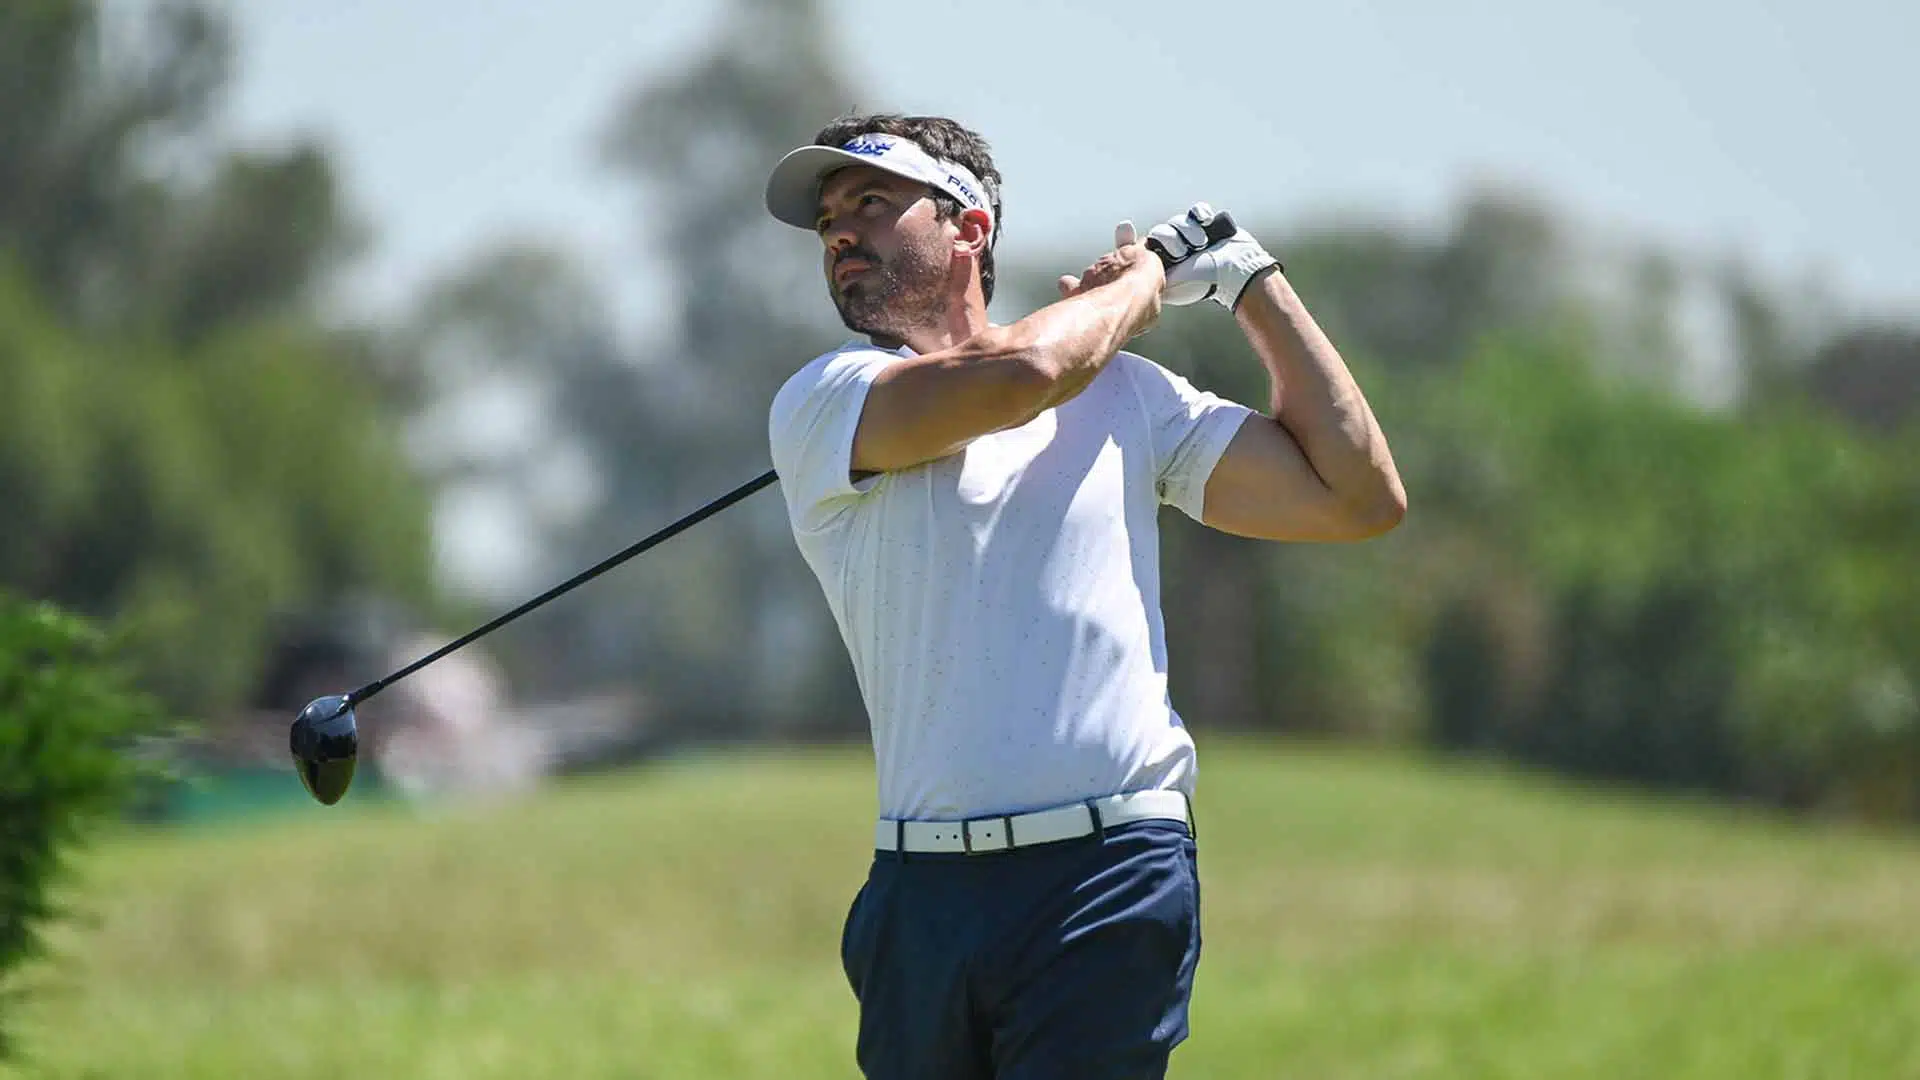 Juan Martín Hernández golf